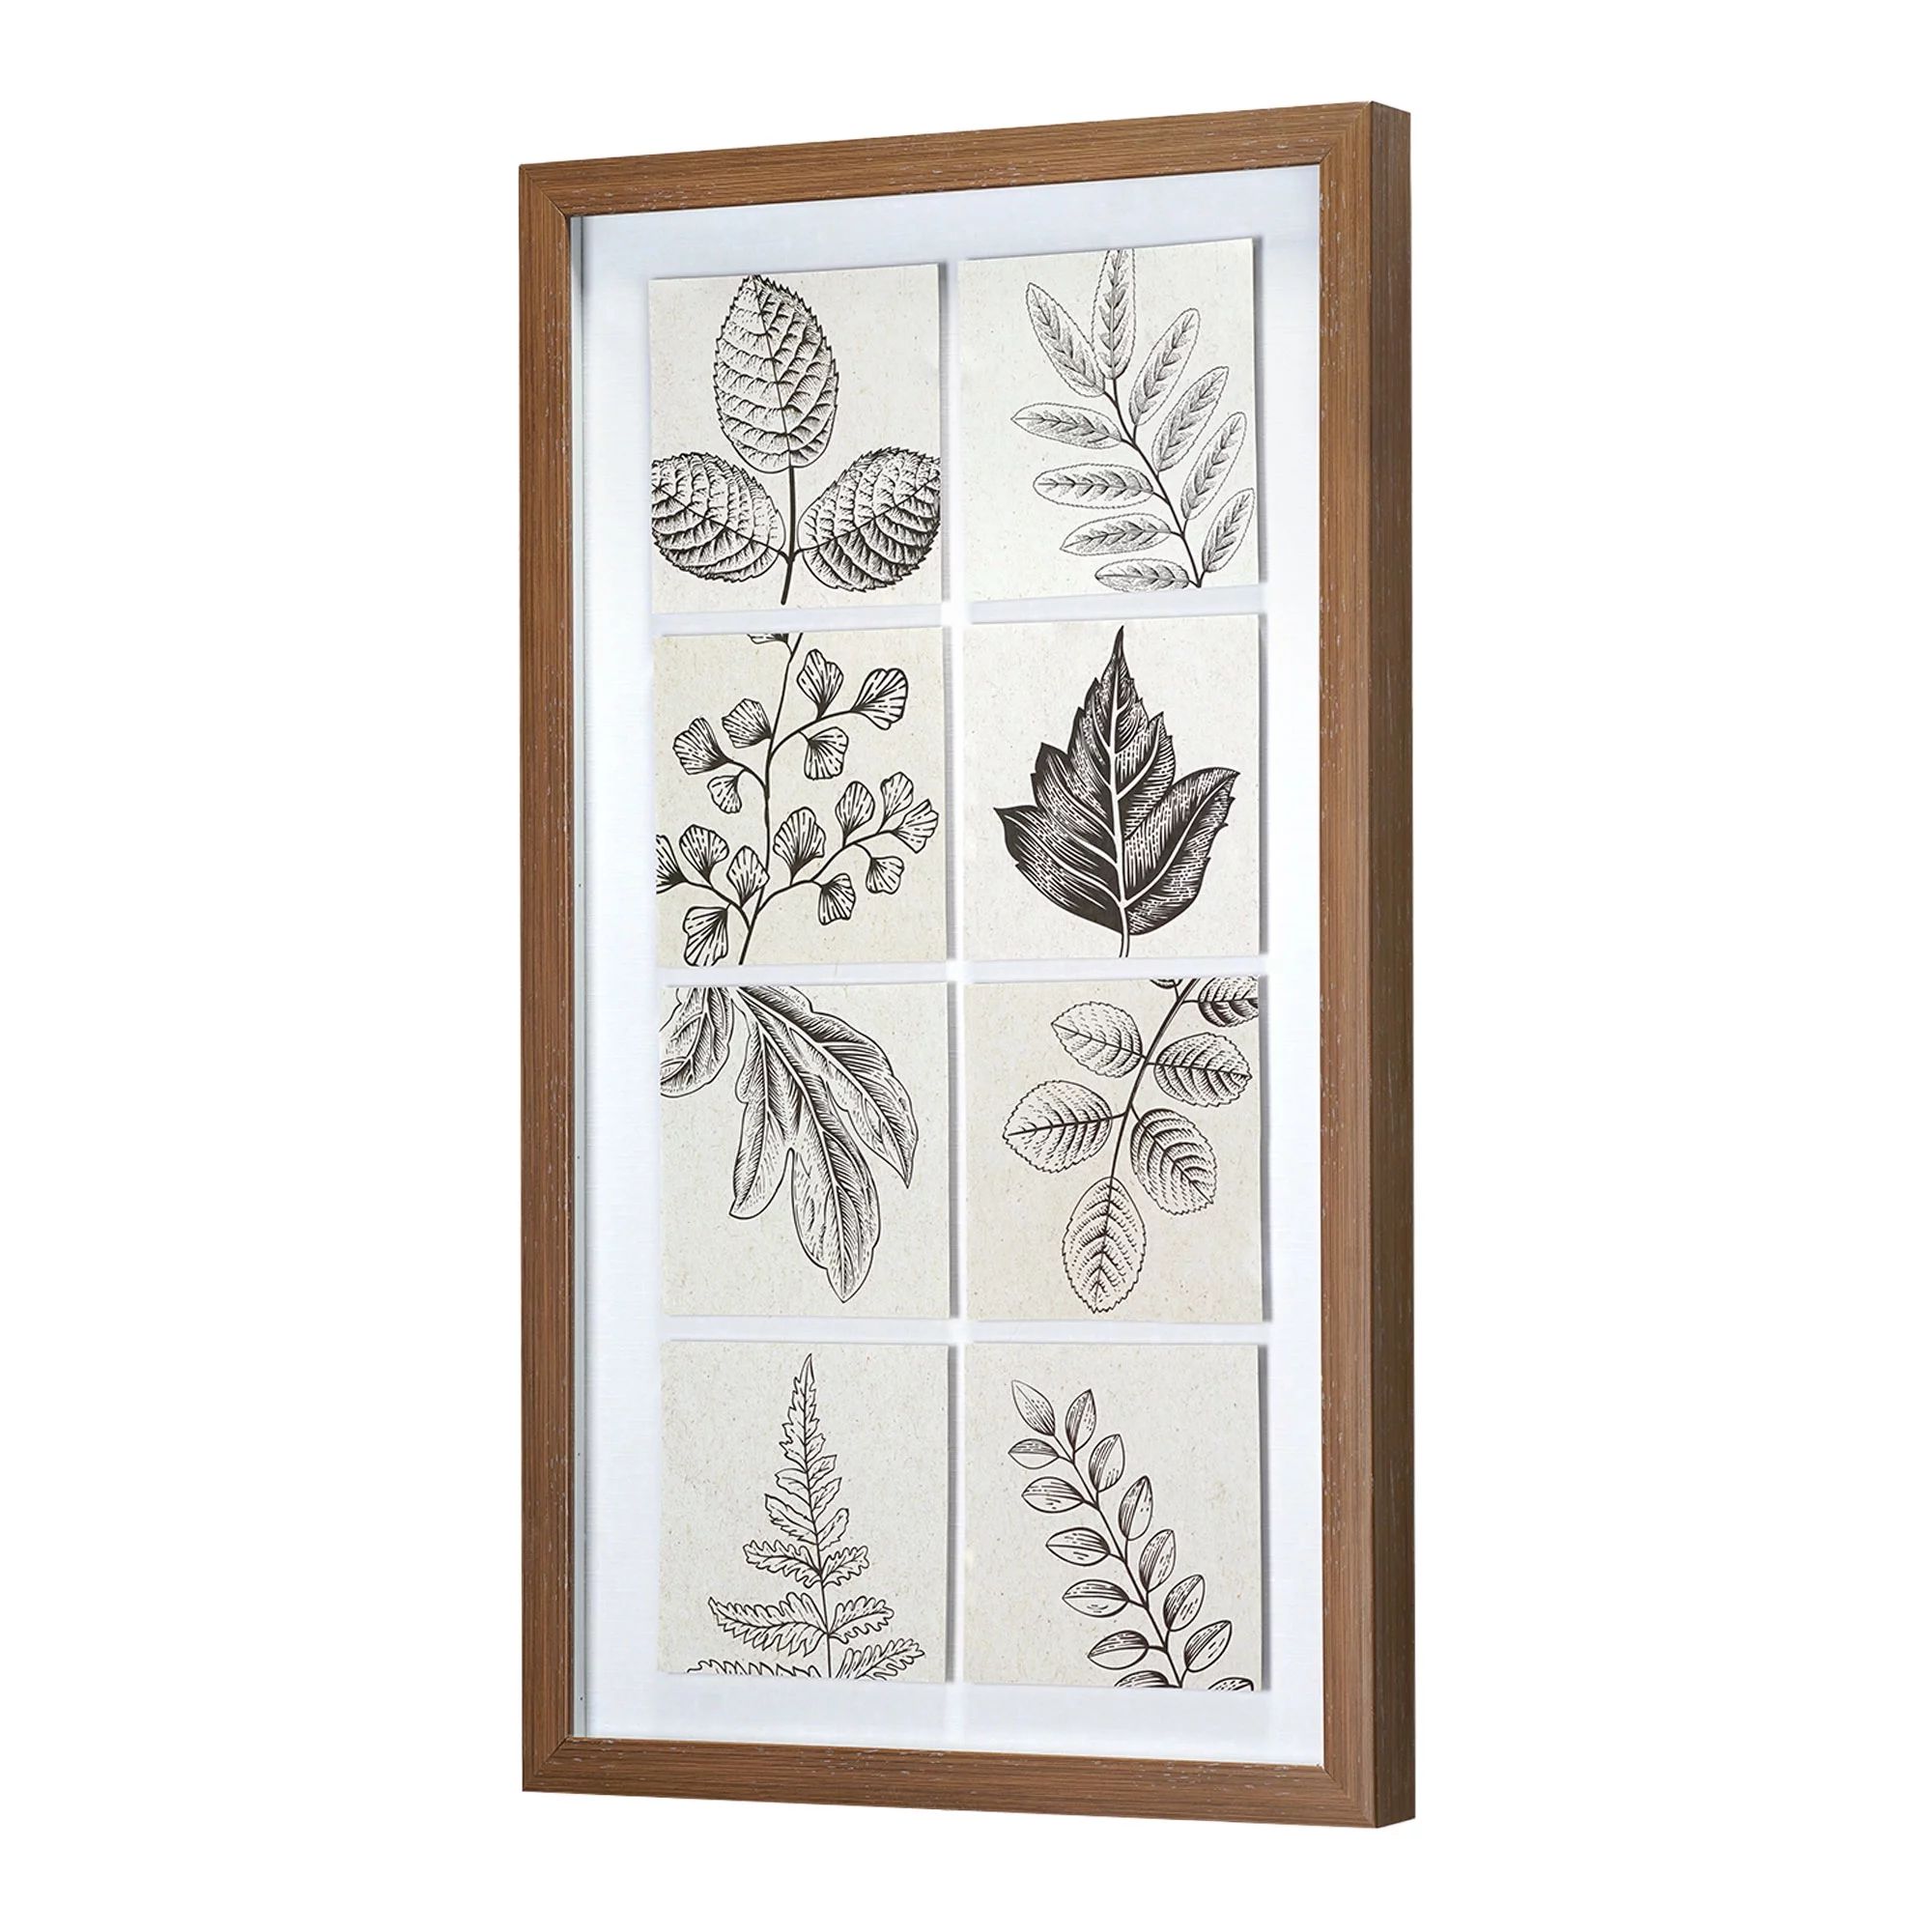 Crystal Art Gallery Vintage Botanical Panels Framed 13" x 22" | Walmart (US)